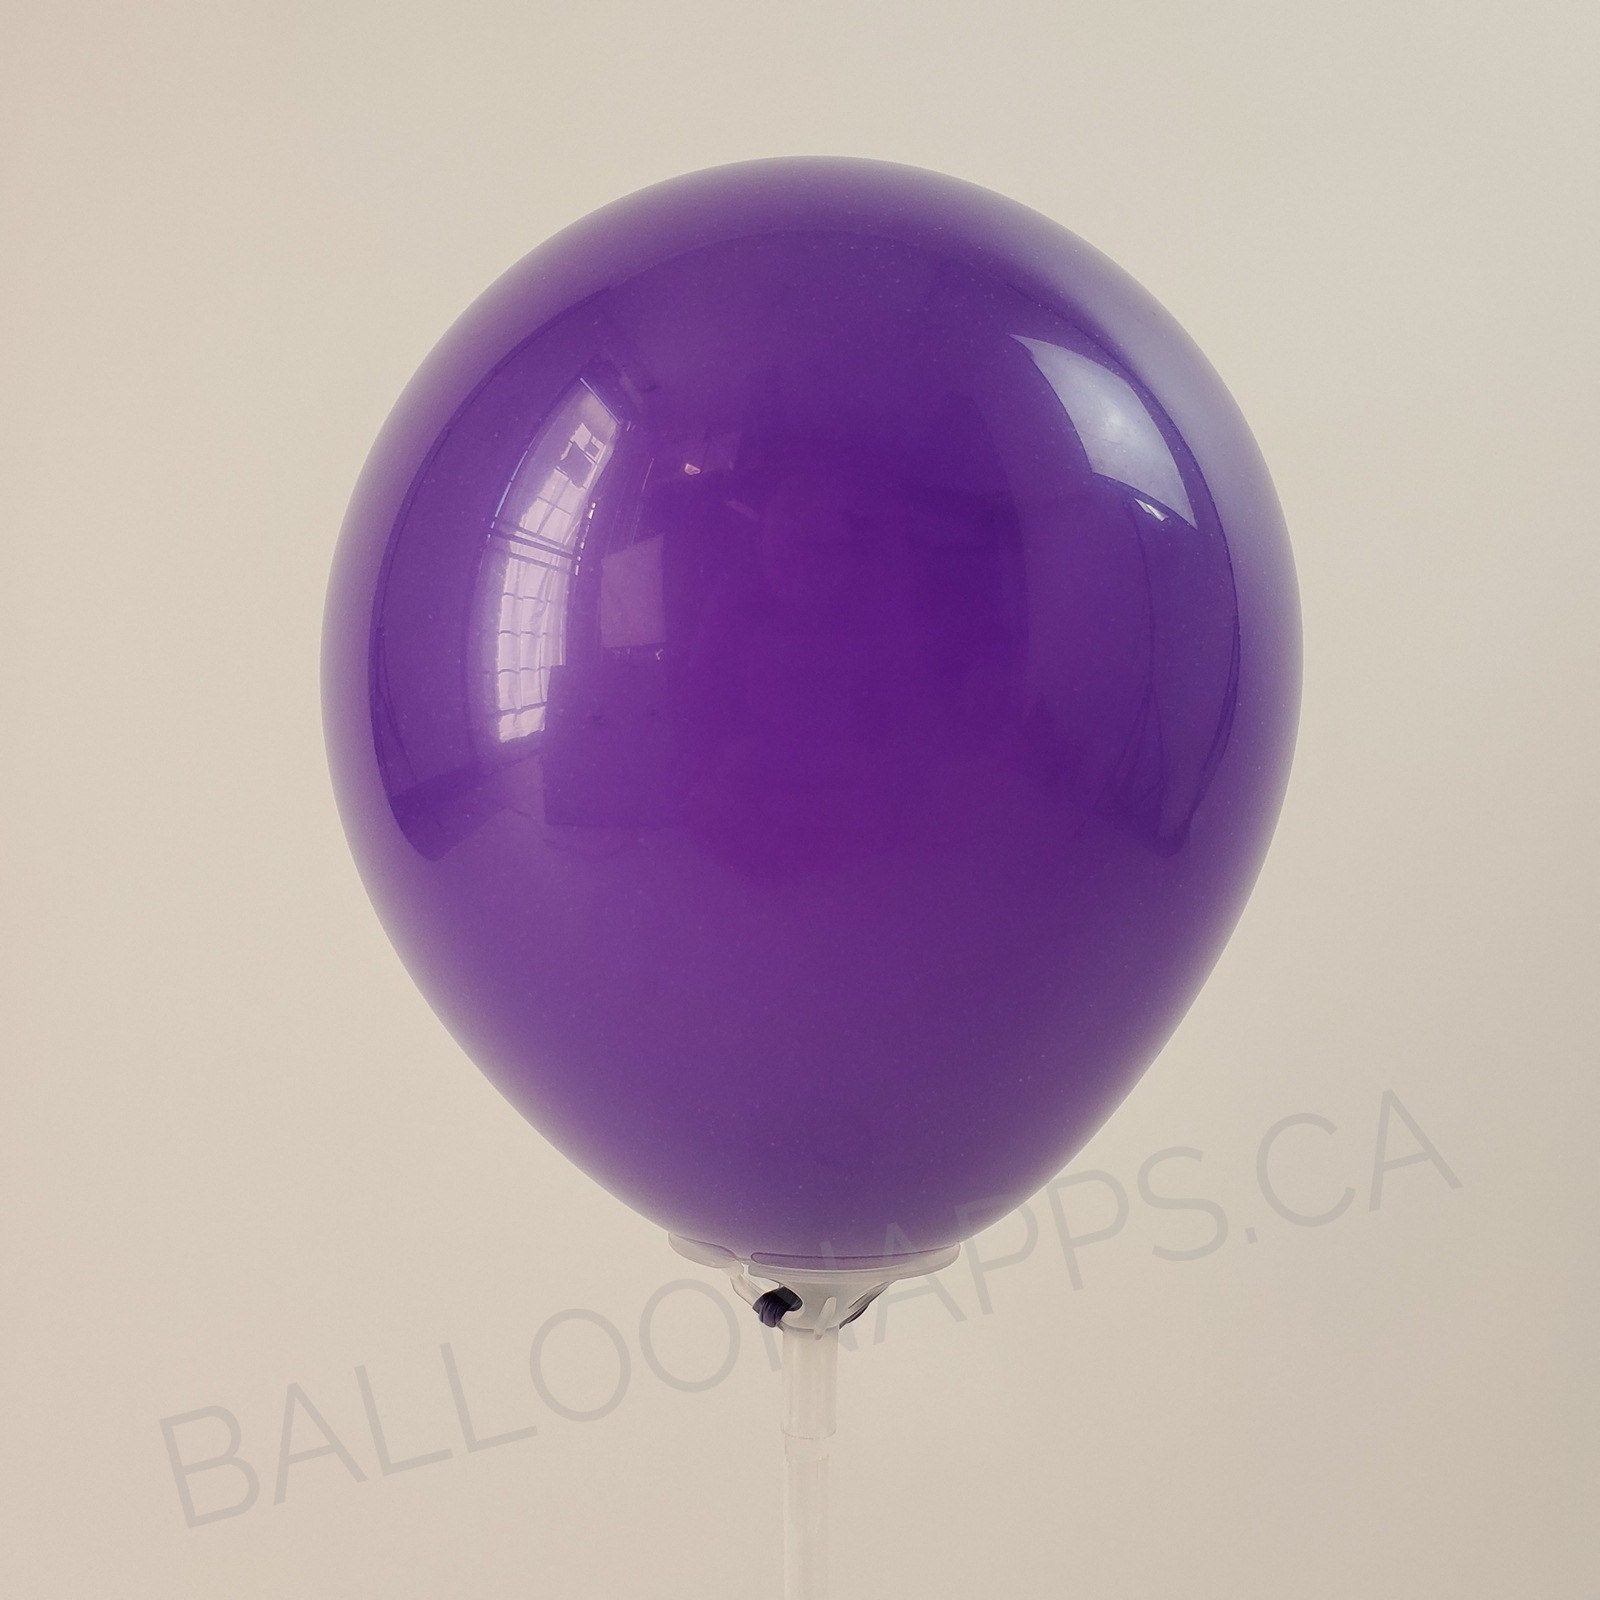 balloon texture BET (1) 36